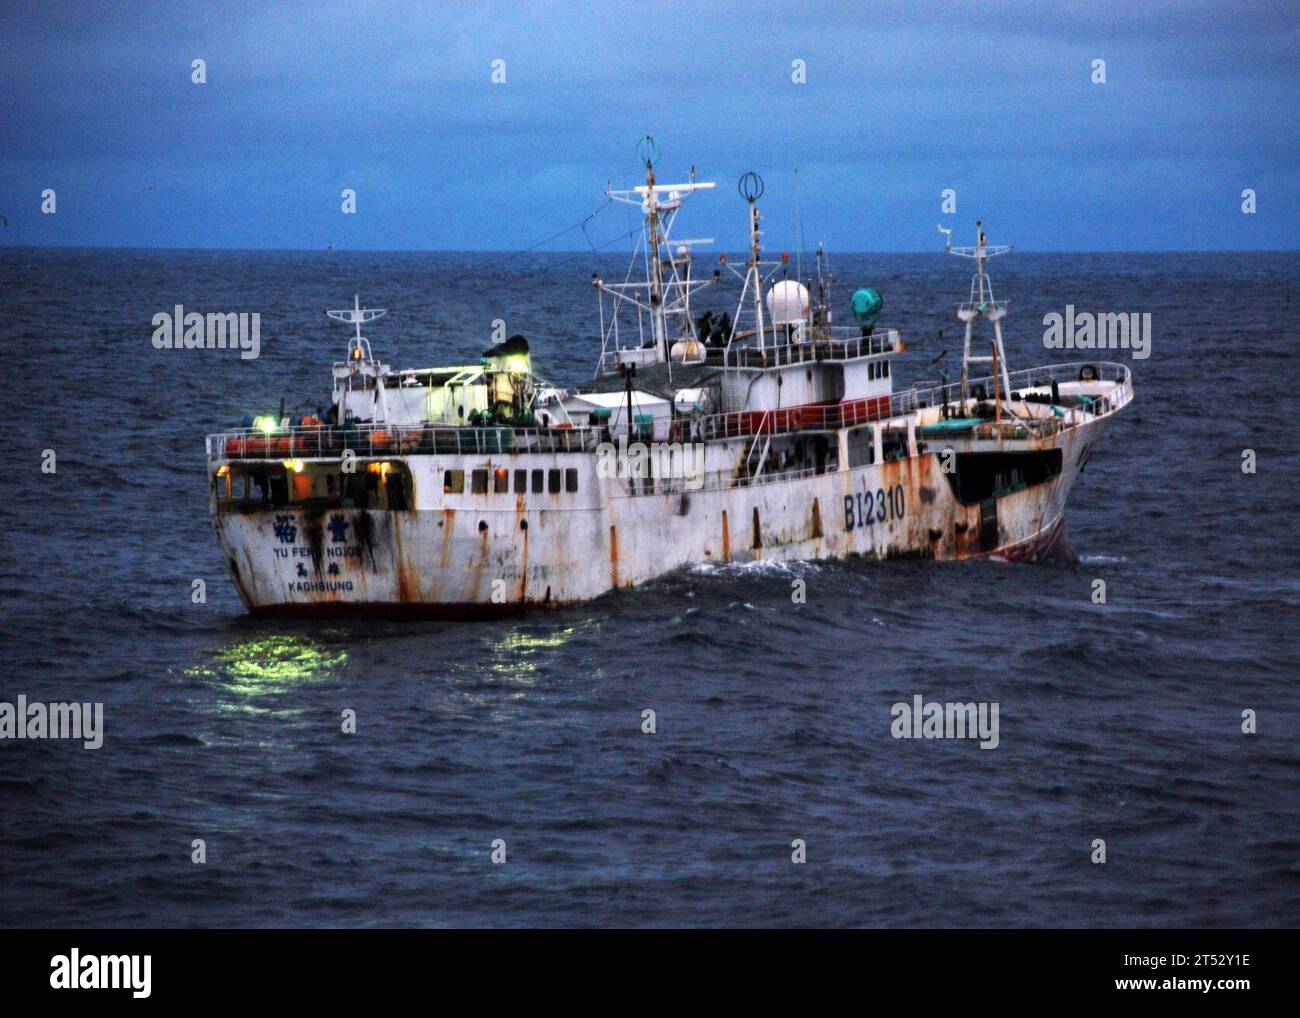 0908176414E-003 ATLANTISCHER OZEAN (17. August 2009) Yu Feng, ein Fischereifahrzeug unter taiwanischer Flagge, das verdächtigt wird, illegale Fischerei zu betreiben, durchquert das Wasser, bevor es von Besatzungsmitgliedern der US-Küstenwache Cutter Legare (WMEC 912) und Vertretern des Seeschiffsflügels Sierra Leones an Bord geht. Fischereiministerium und Amt für nationale Sicherheit. Sierra Leone patrouilliert die Gewässer weiter vor ihrer Küste, um ihre Wirtschaftszone zu schützen. LeGare, Homeportiert in Portsmouth, Virginia, befindet sich auf einem dreimonatigen Einsatz als Teil der Africa Partnership Station. (US-Küstenwache Stockfoto